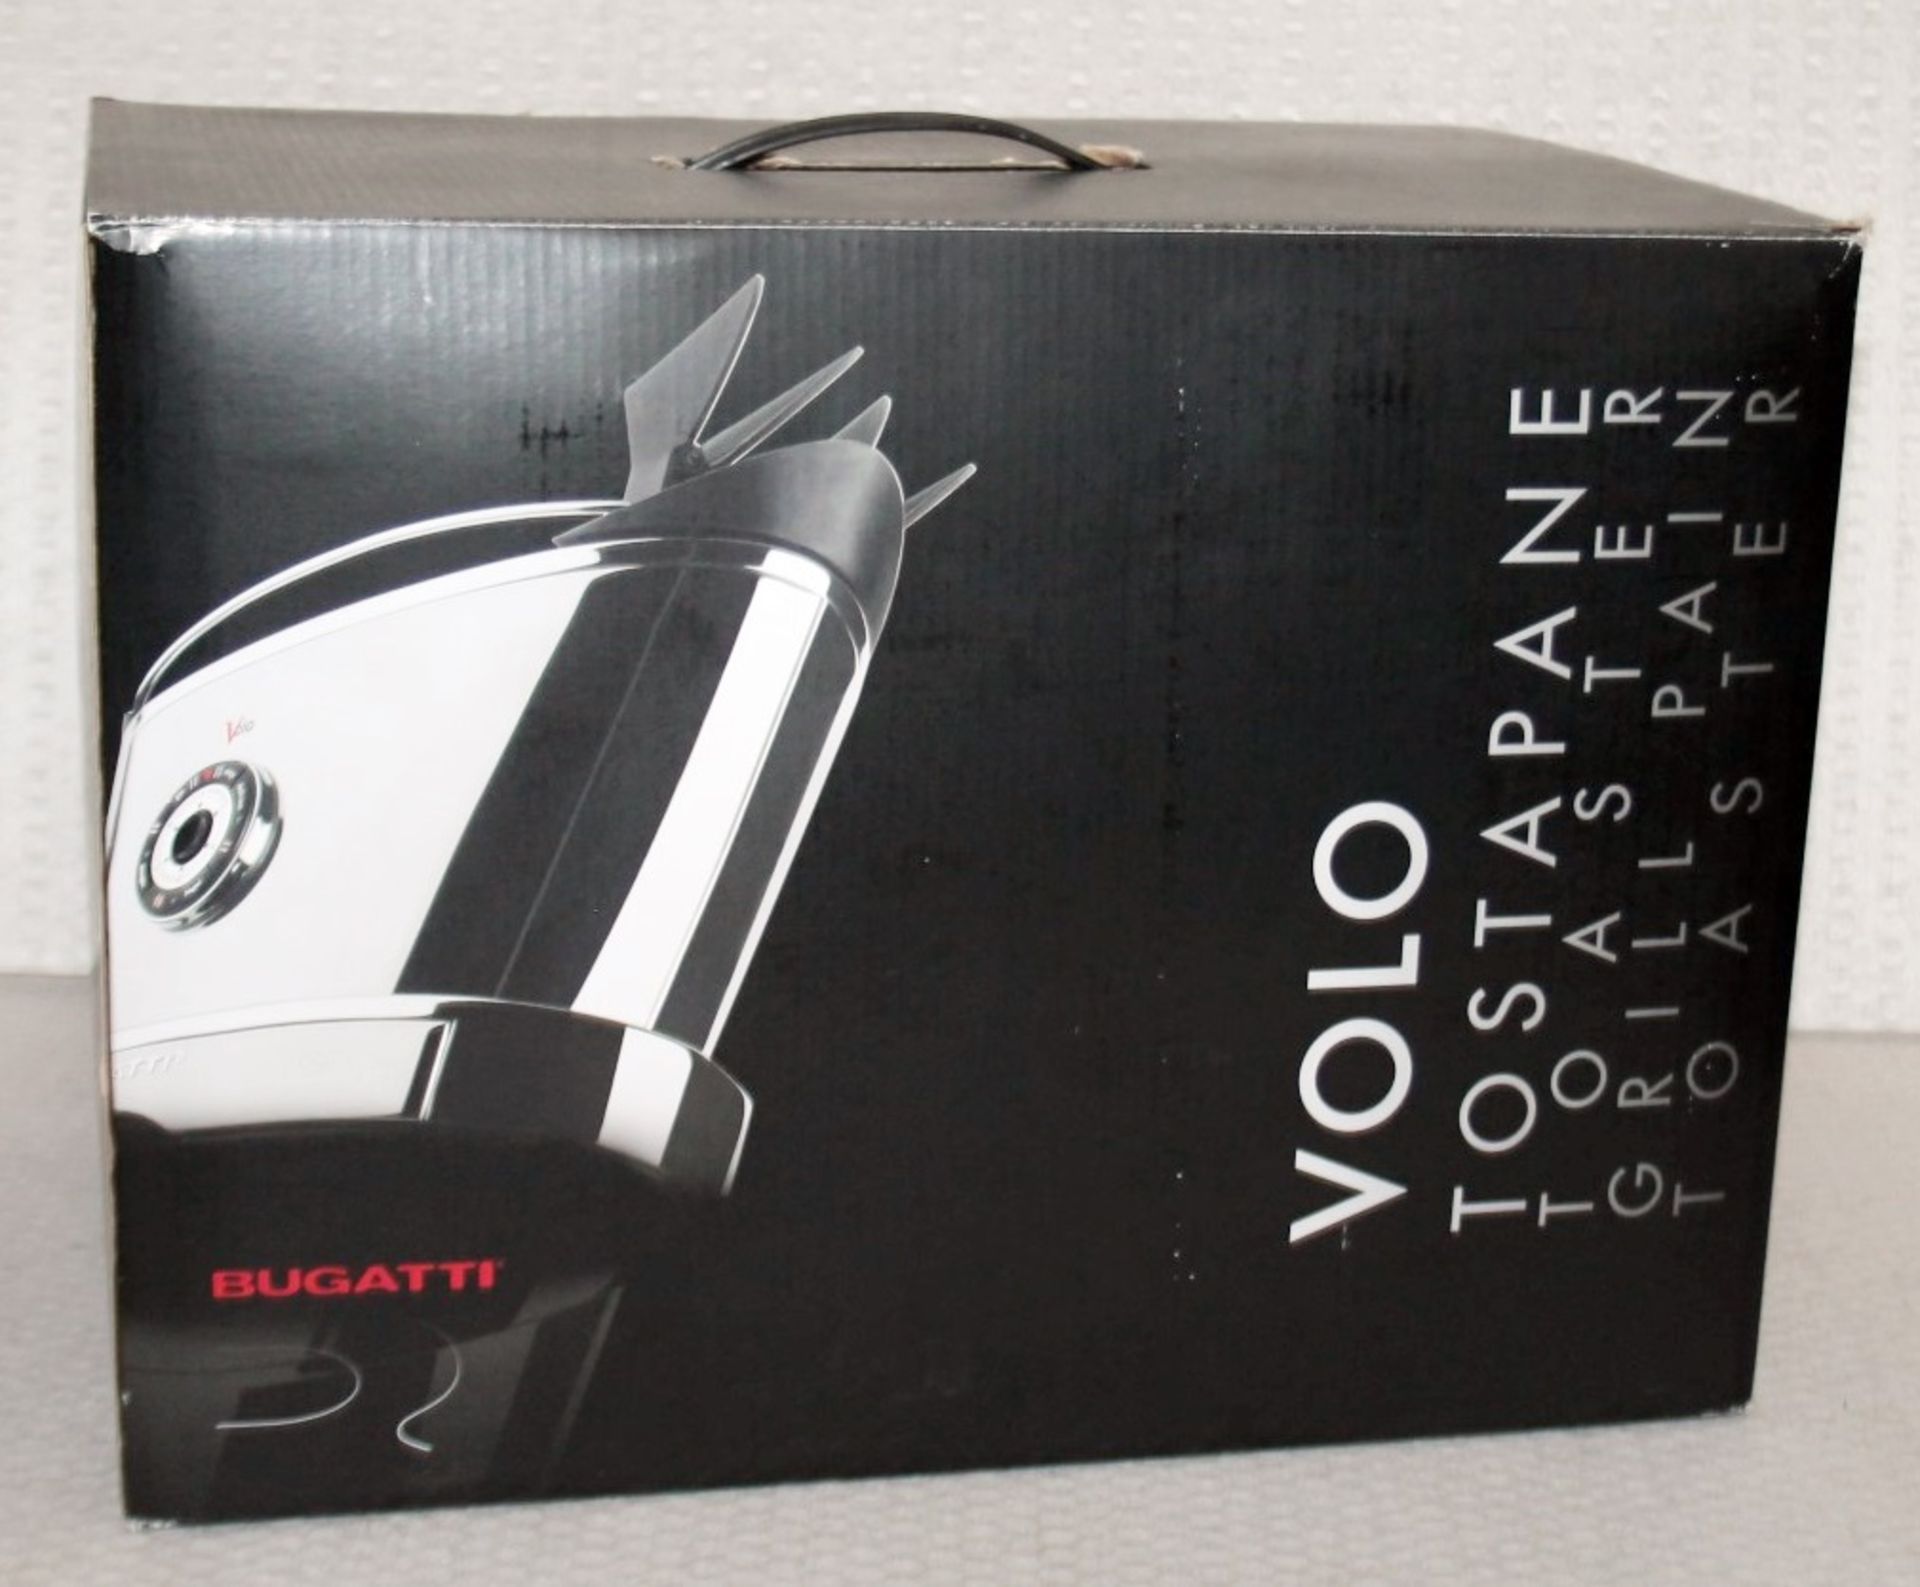 1 x Bugatti 'VOLO' Designer 2-Slice Self-Lowering Toaster In Chrome - Original Price £178.00 - Boxed - Image 12 of 13